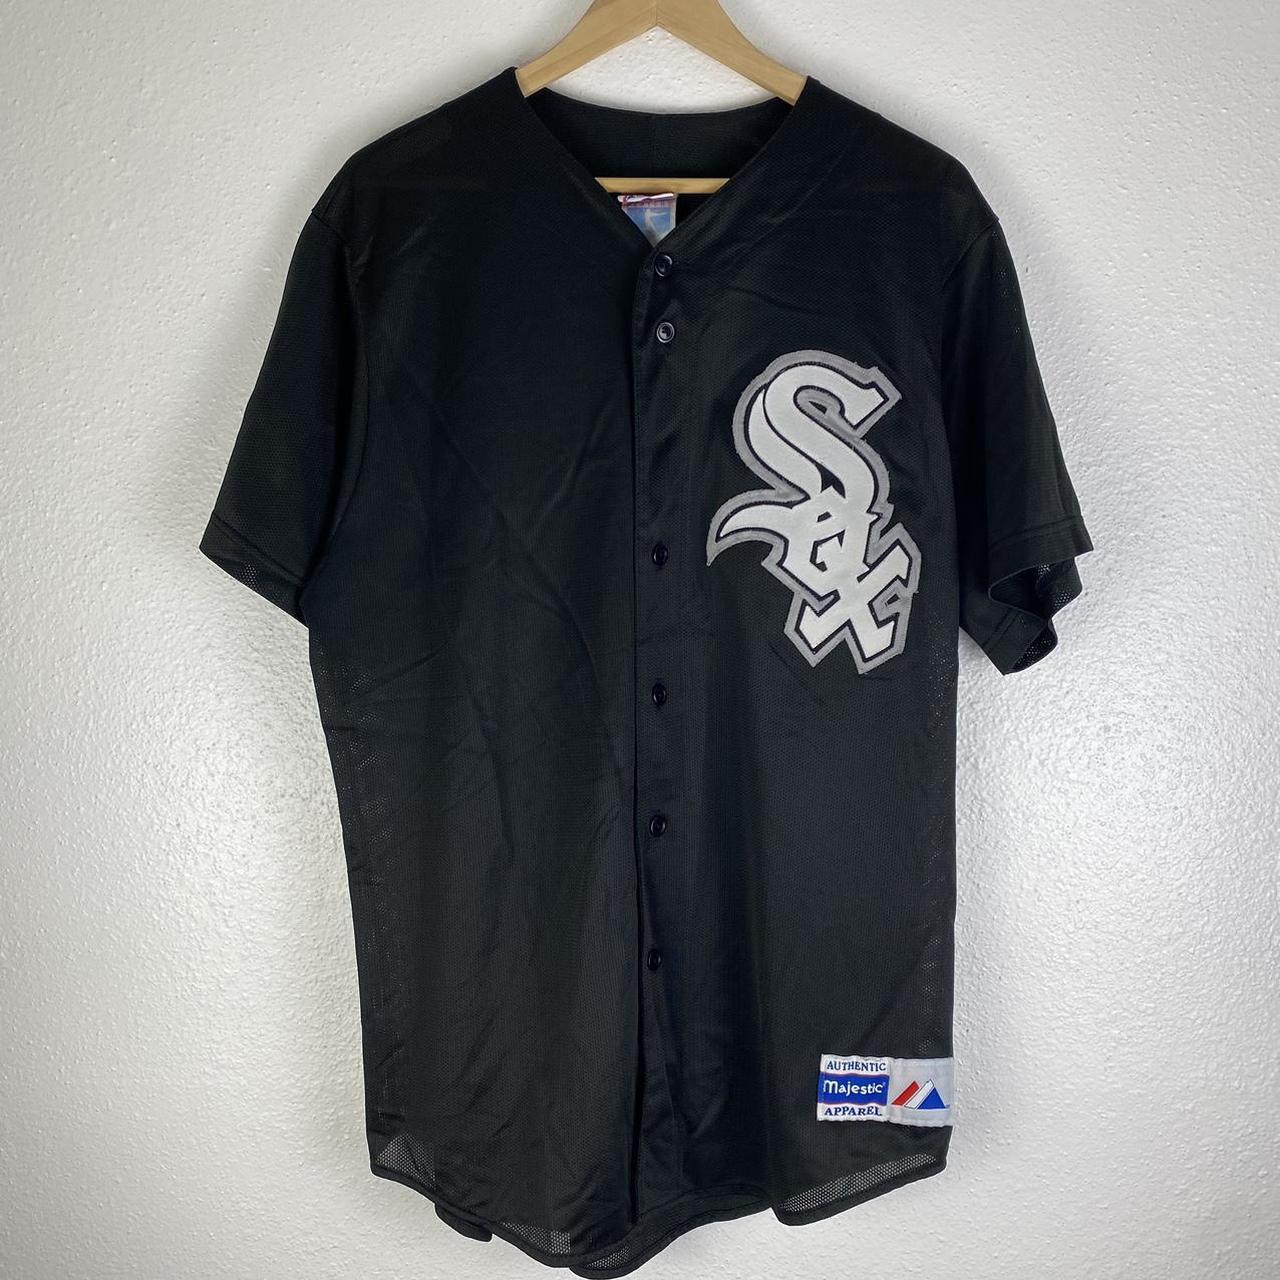 Vintage 90s White Sox Baseball Jersey, number - Depop